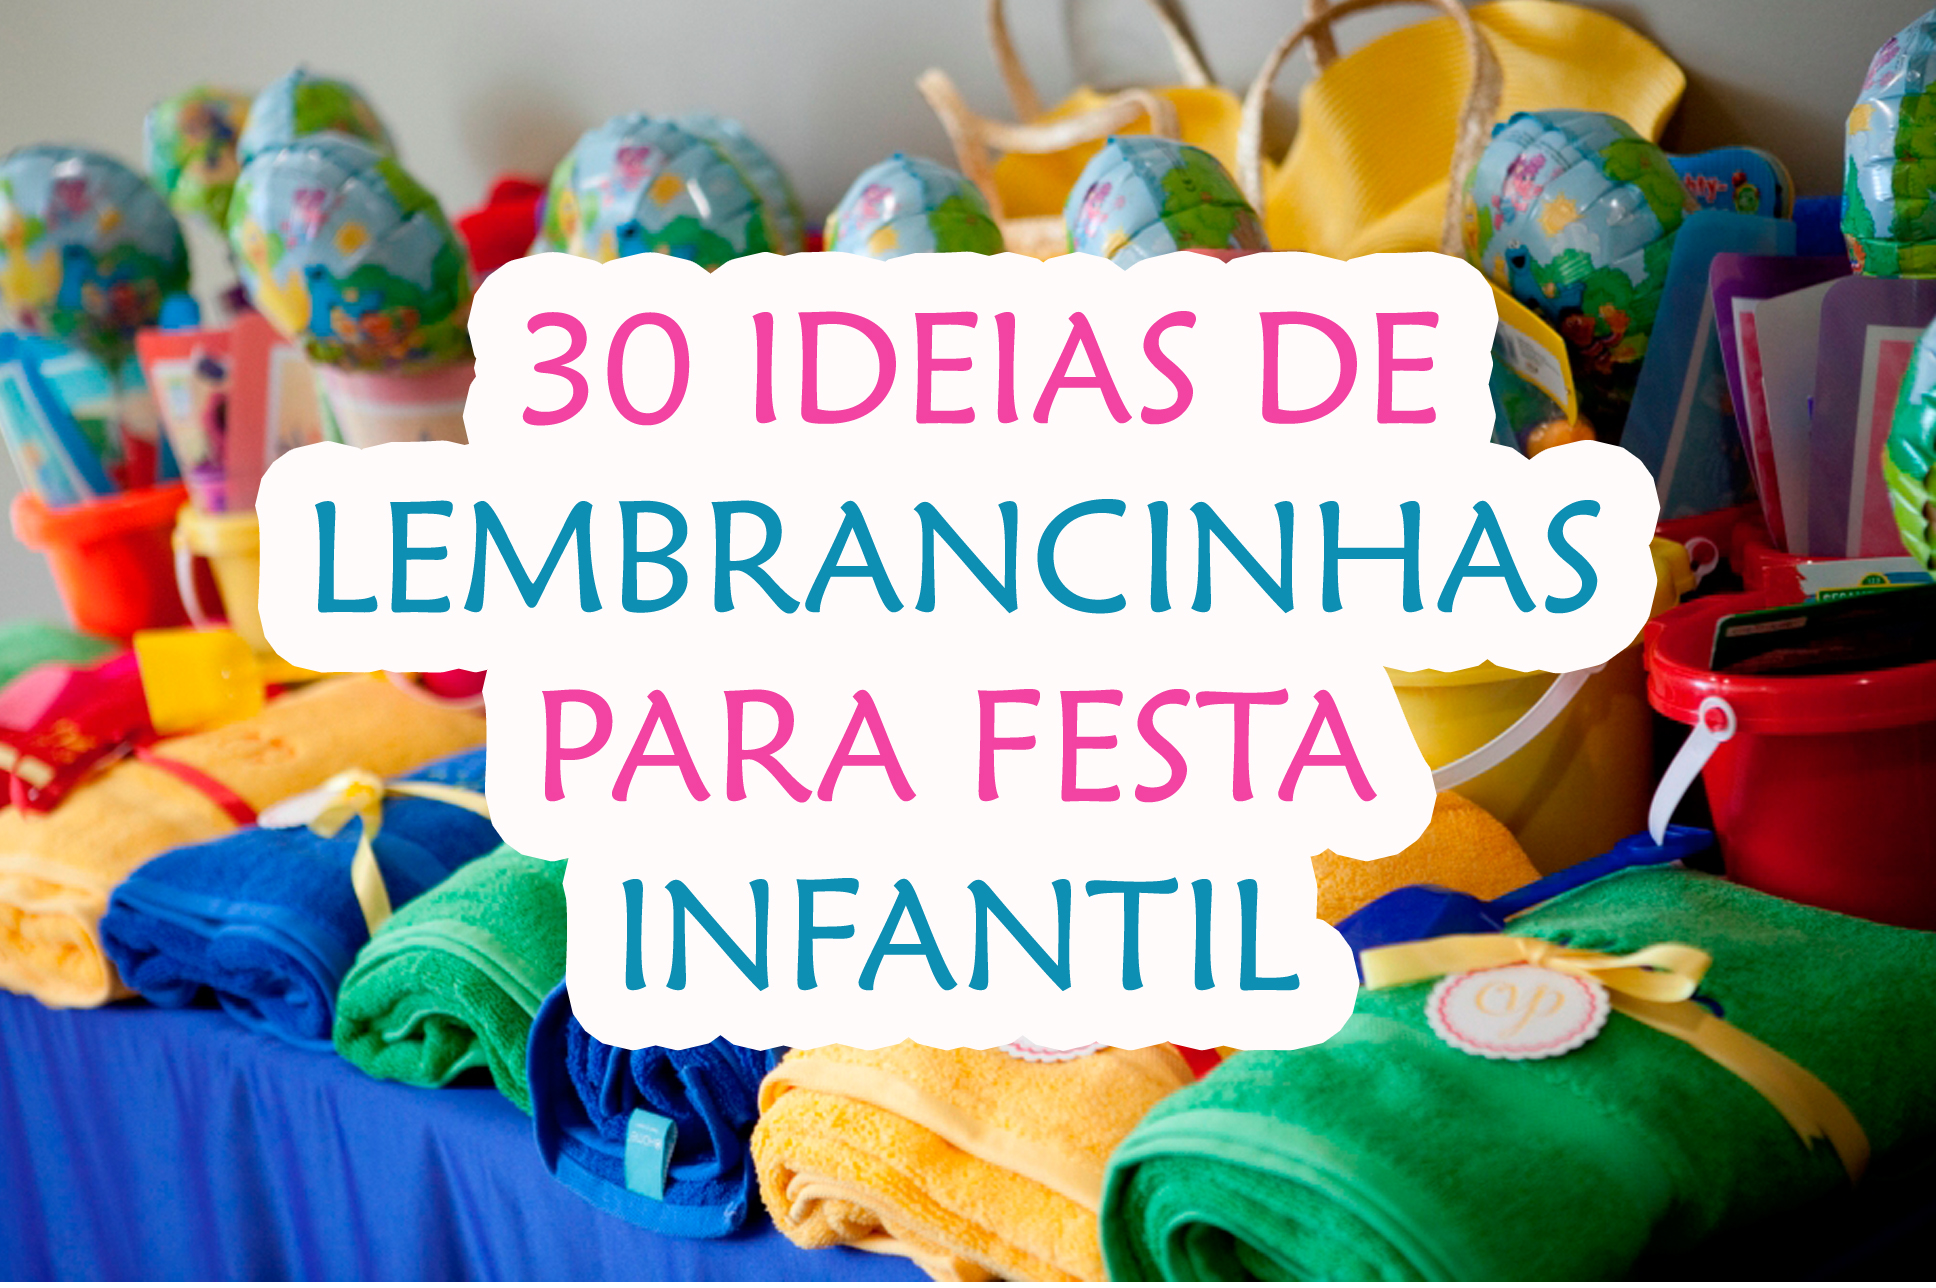 30 Ideias de Lembrancinhas para Festa Infantil - Blog Sonho em Cores